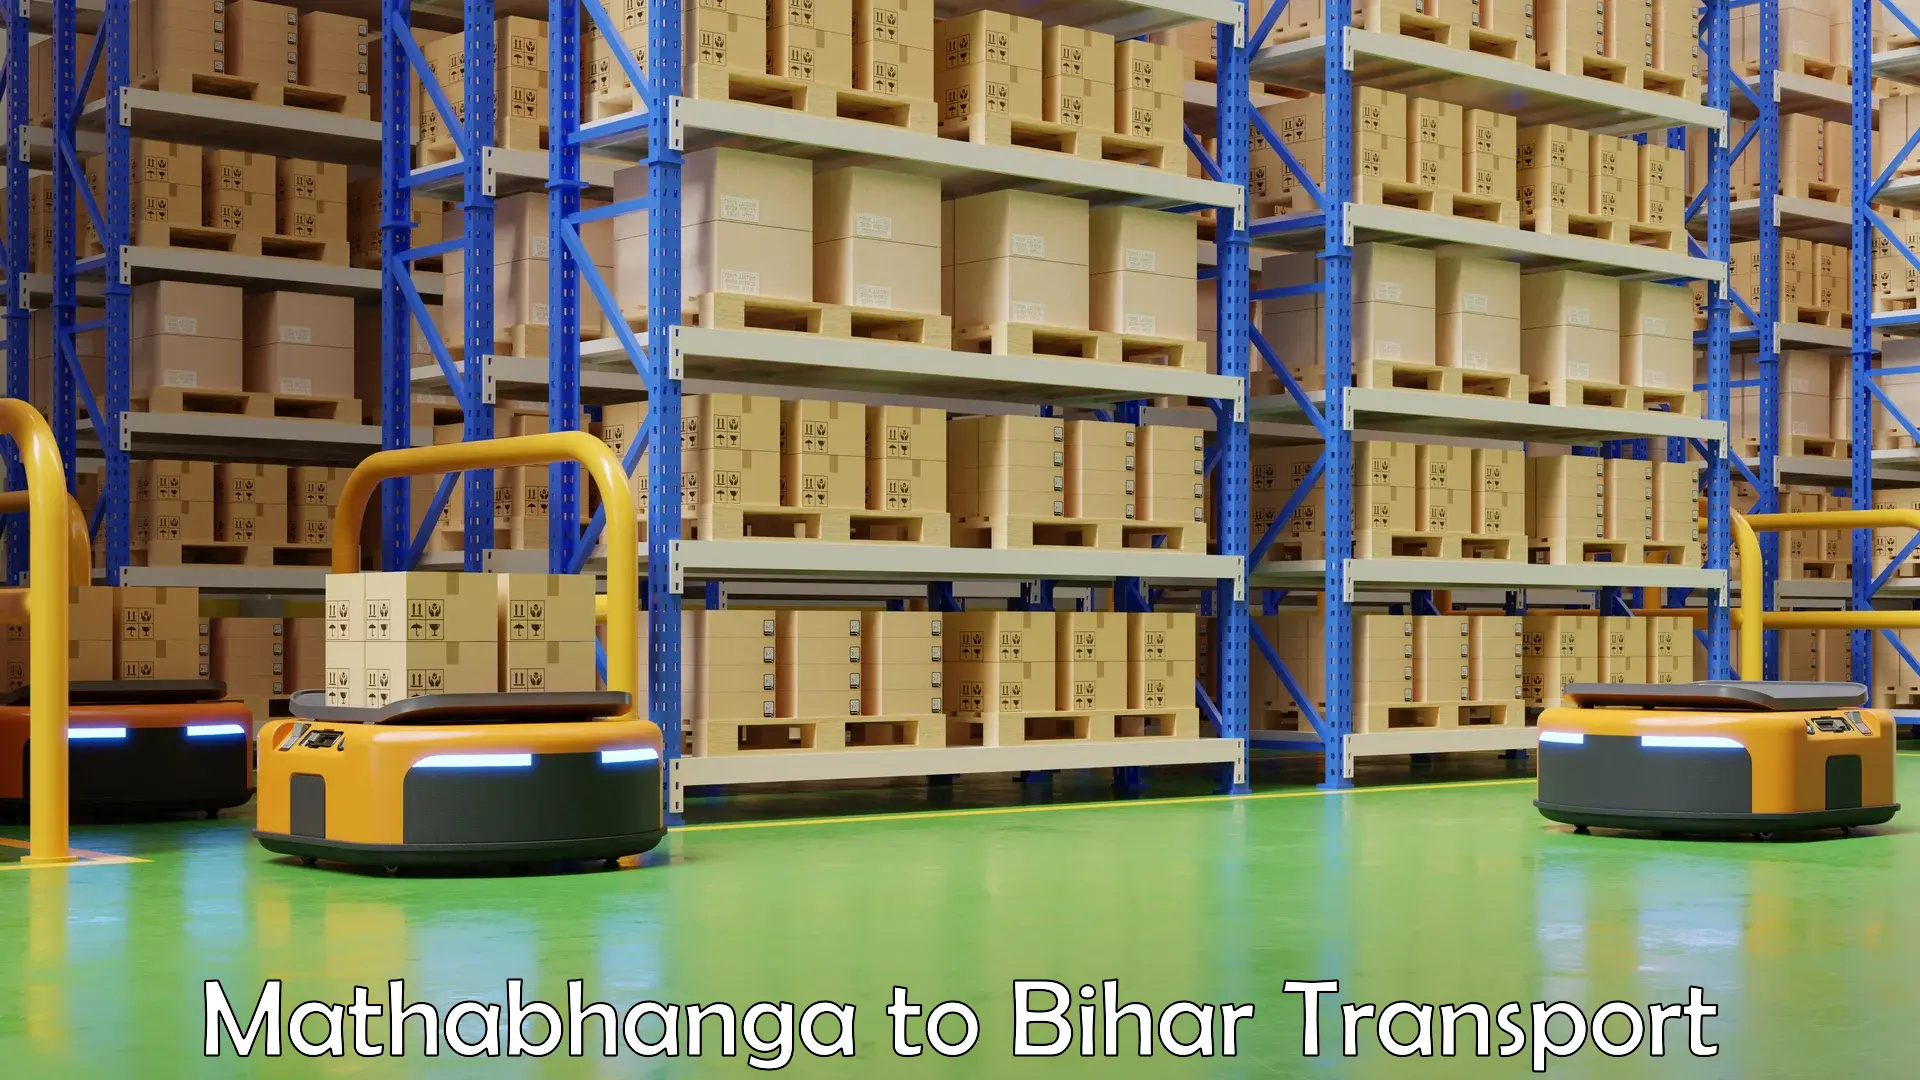 Truck transport companies in India Mathabhanga to Pakribarawan